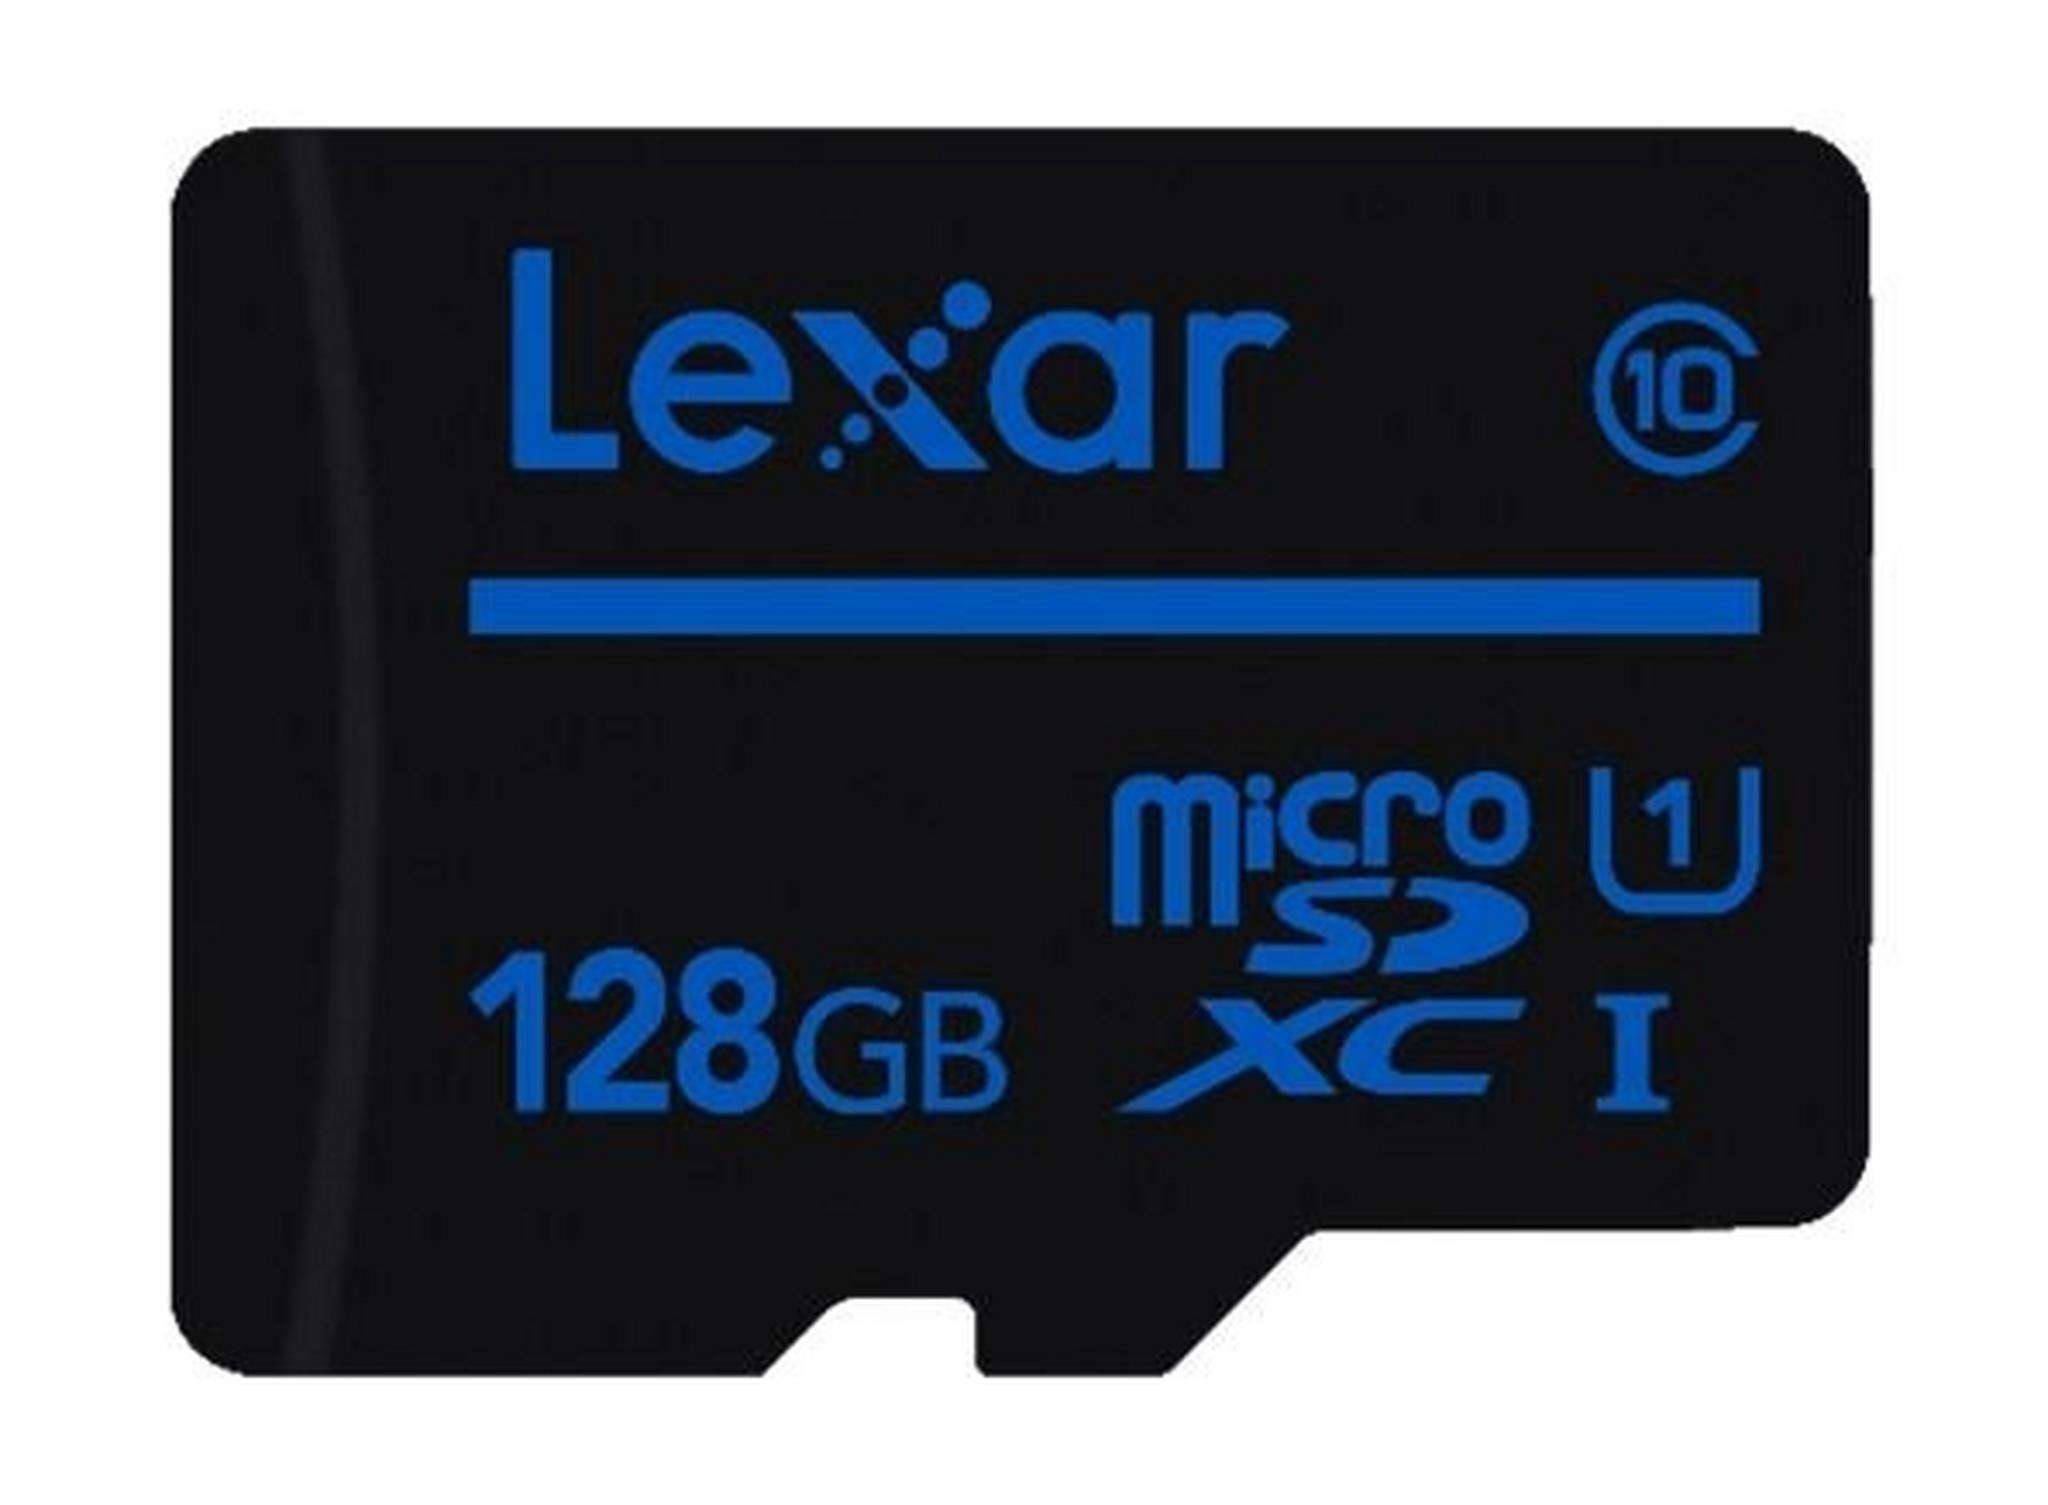 بطاقة ذاكرة ميكرو اس دي بسعة 128 جيجابيايت من ليكسار كلاس 10 UHS-| U1